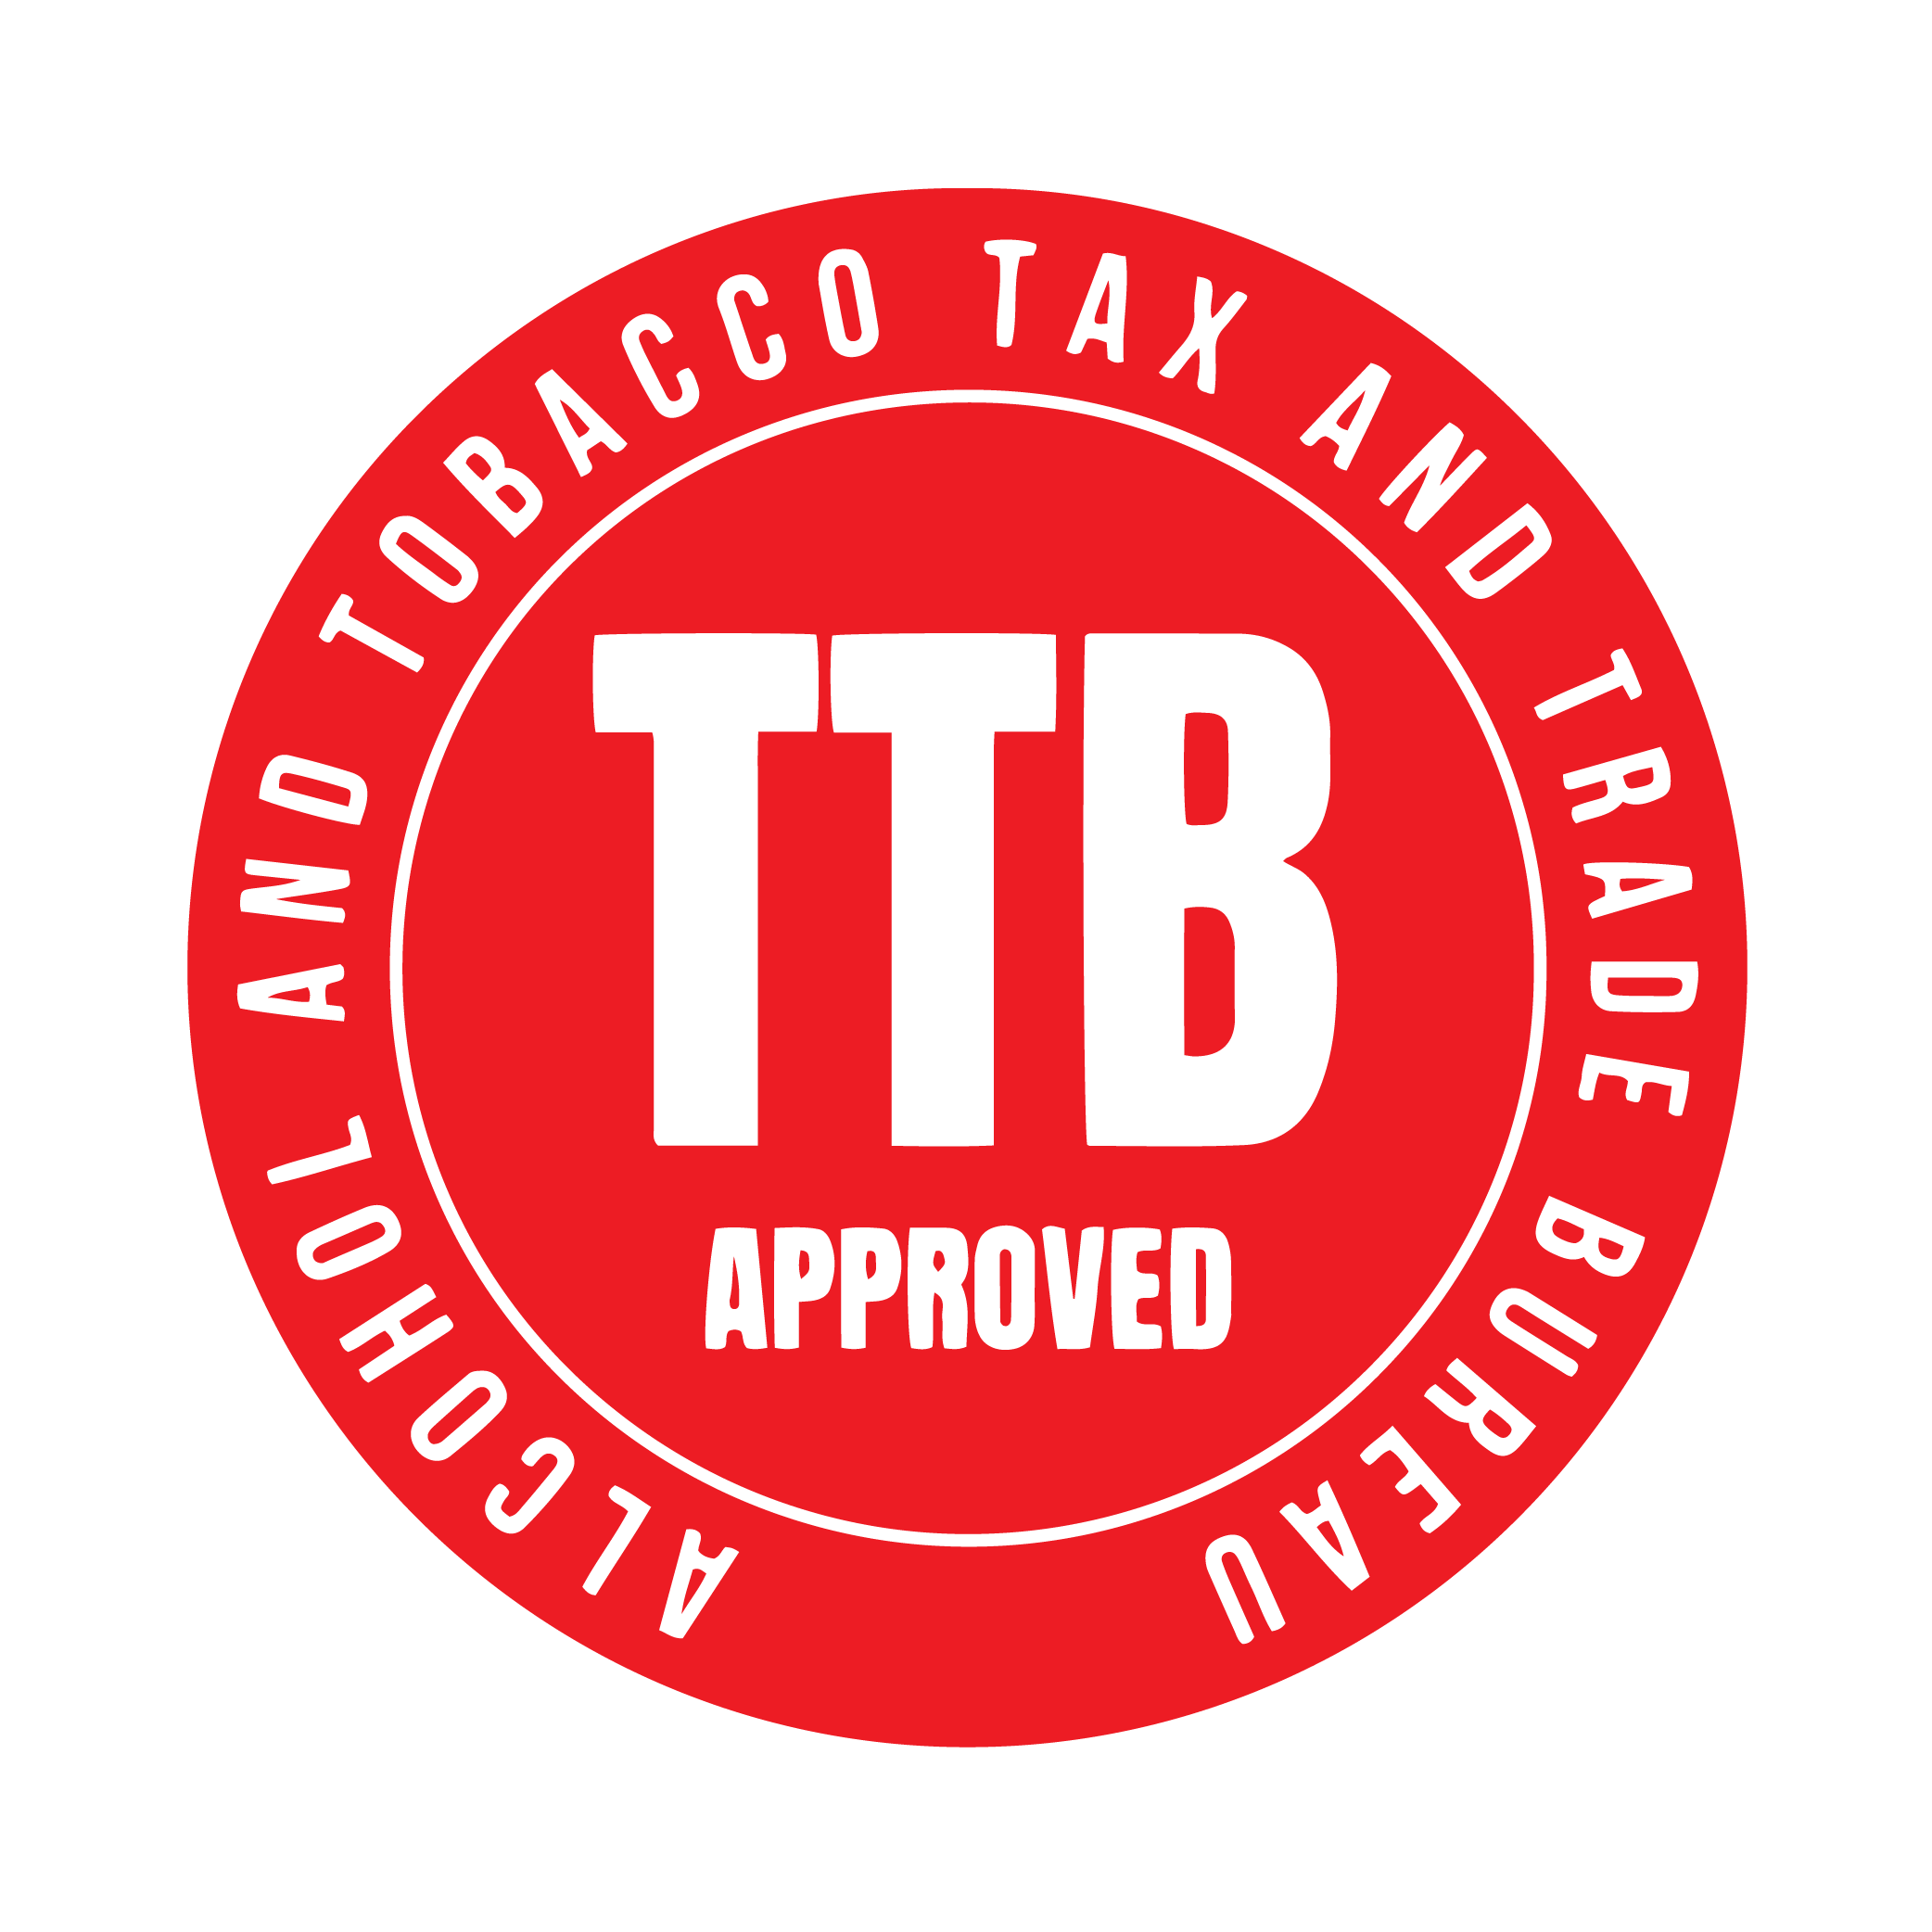 TTB logo